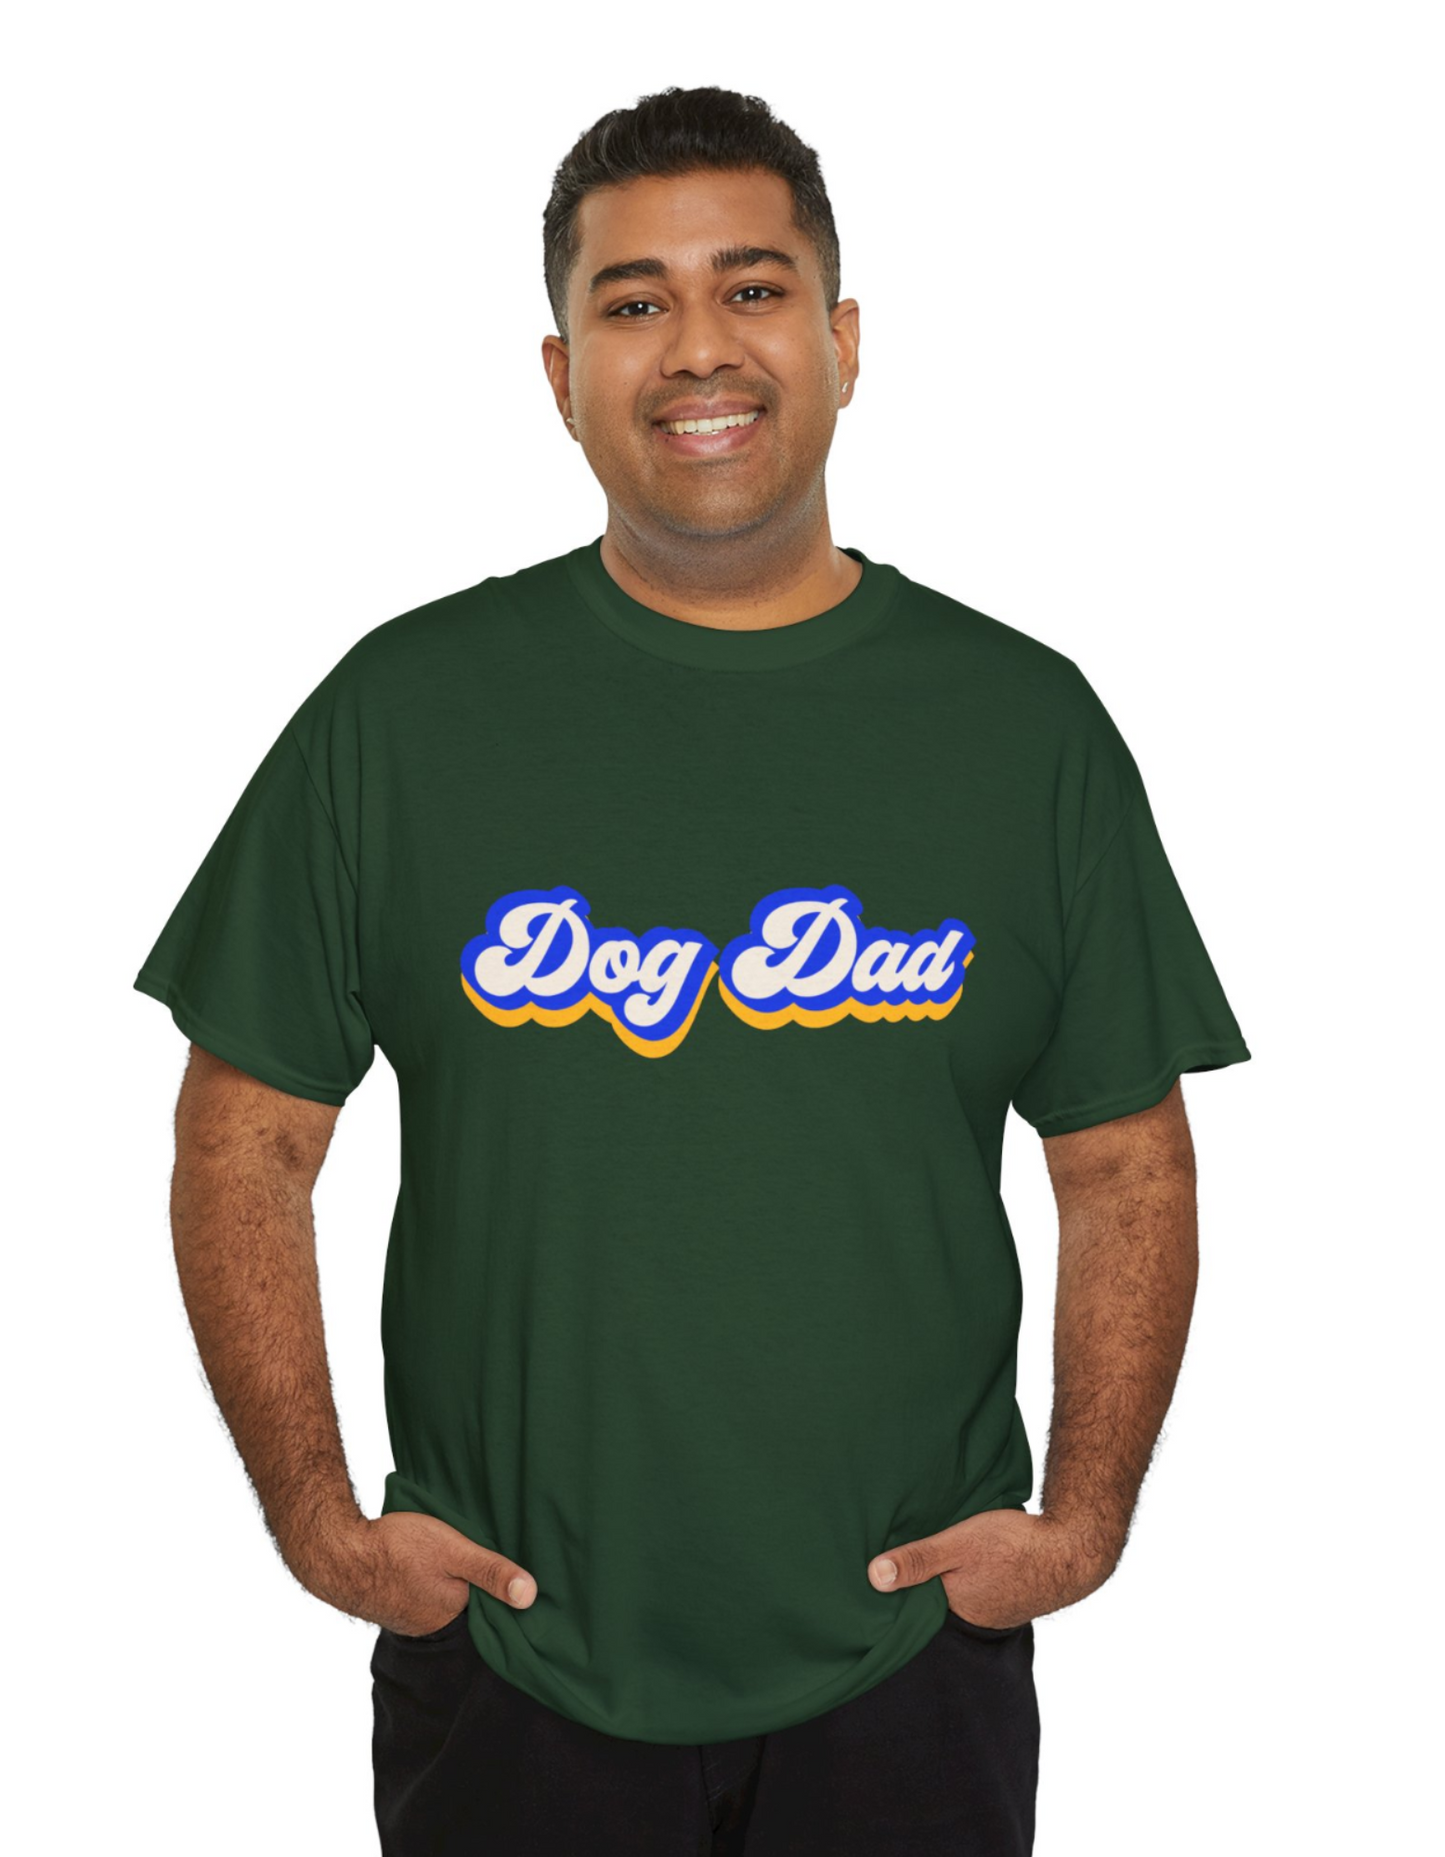 DOG DAD UNISEX T-SHIRT- HUNTER GREEN